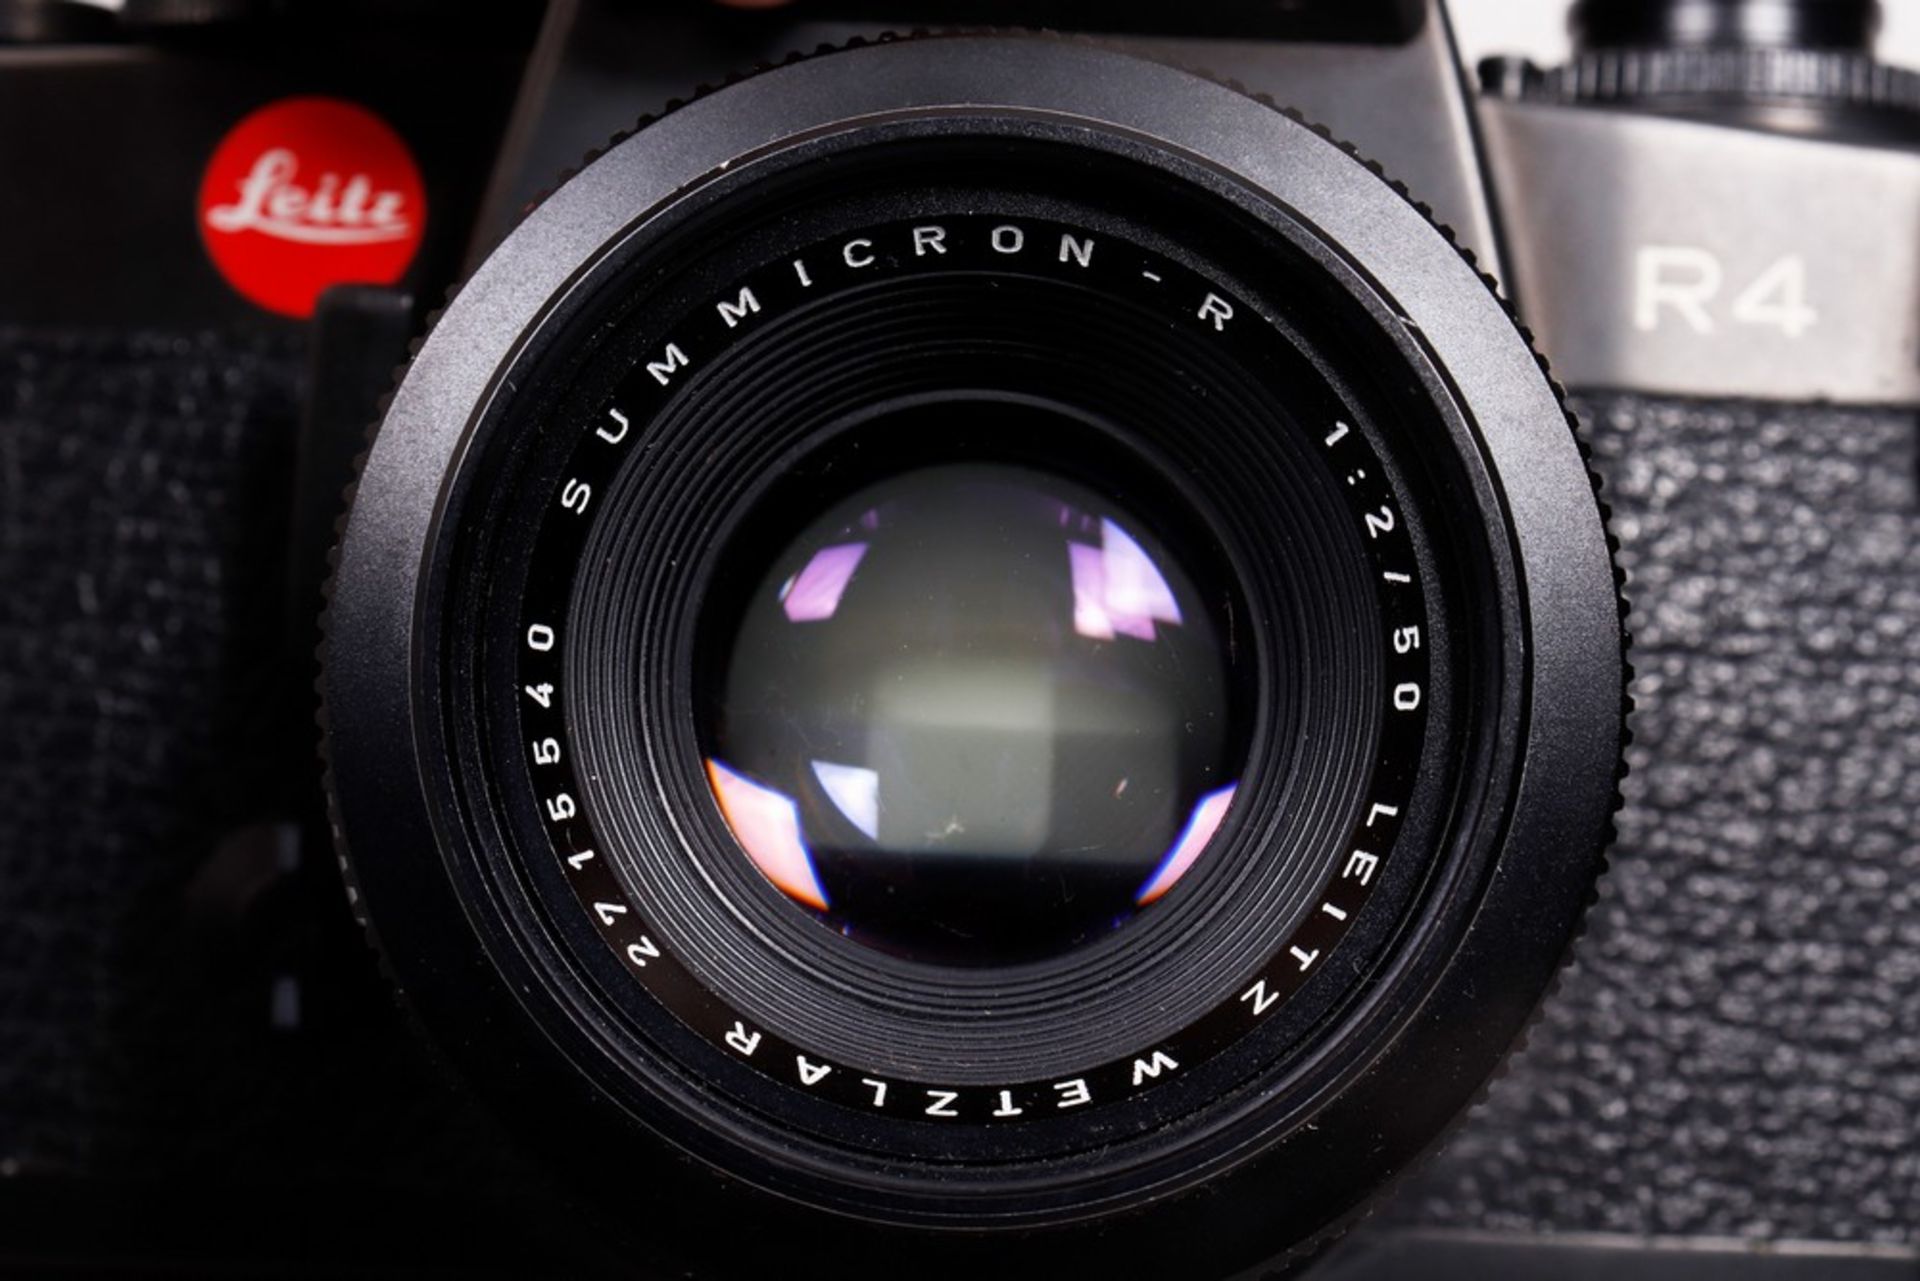 SLR camera, Ernst Leitz, 1981/82 - Image 2 of 4